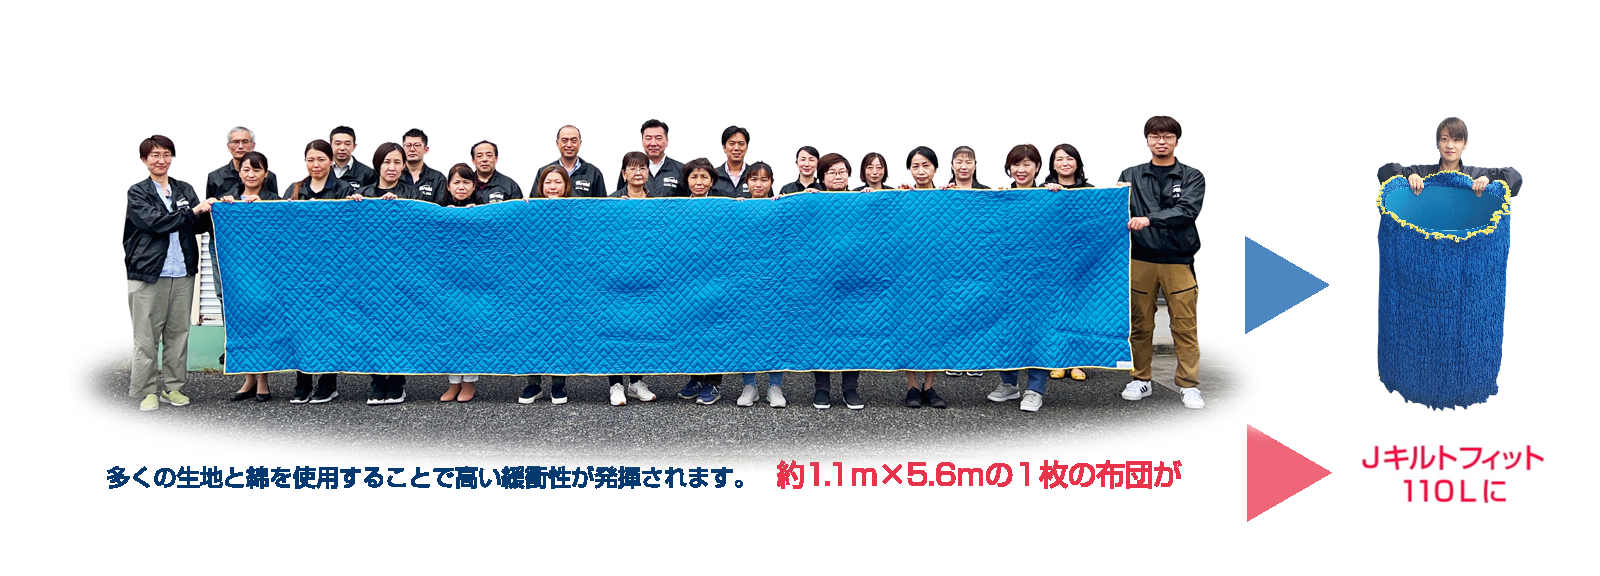 日本製アサヒ フィットカバー(ゴム入りパッド)110L 1枚(梱包用品 養生資材 引越し用品 引越資材 蛇腹形状) 表生地:青色・ 裏生地: - 2